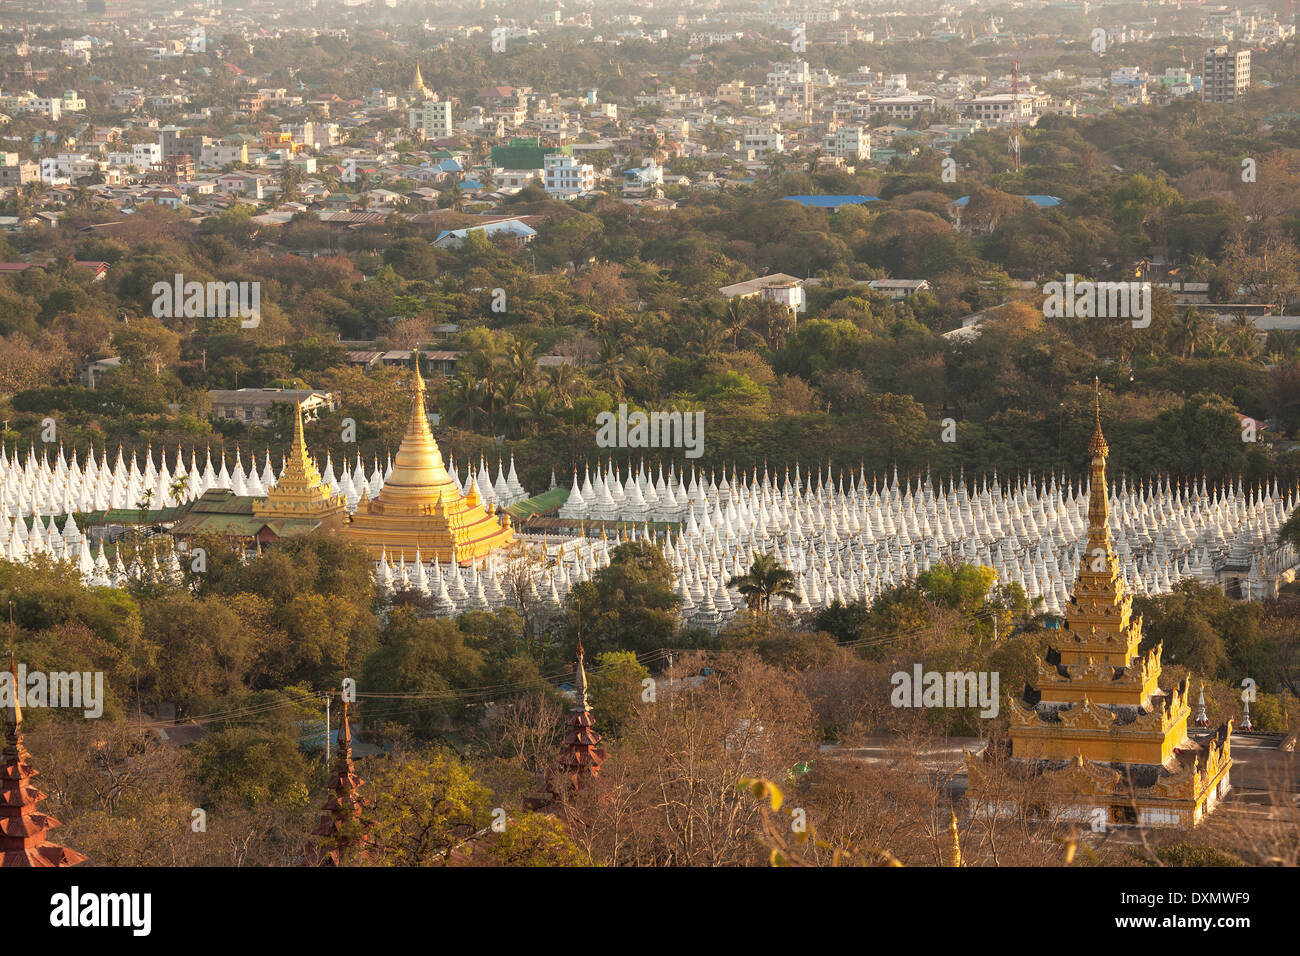 Weltweit größte Stein-Bibliothek in der Nähe von Mandalay Stadt, Myanmar. Stockfoto